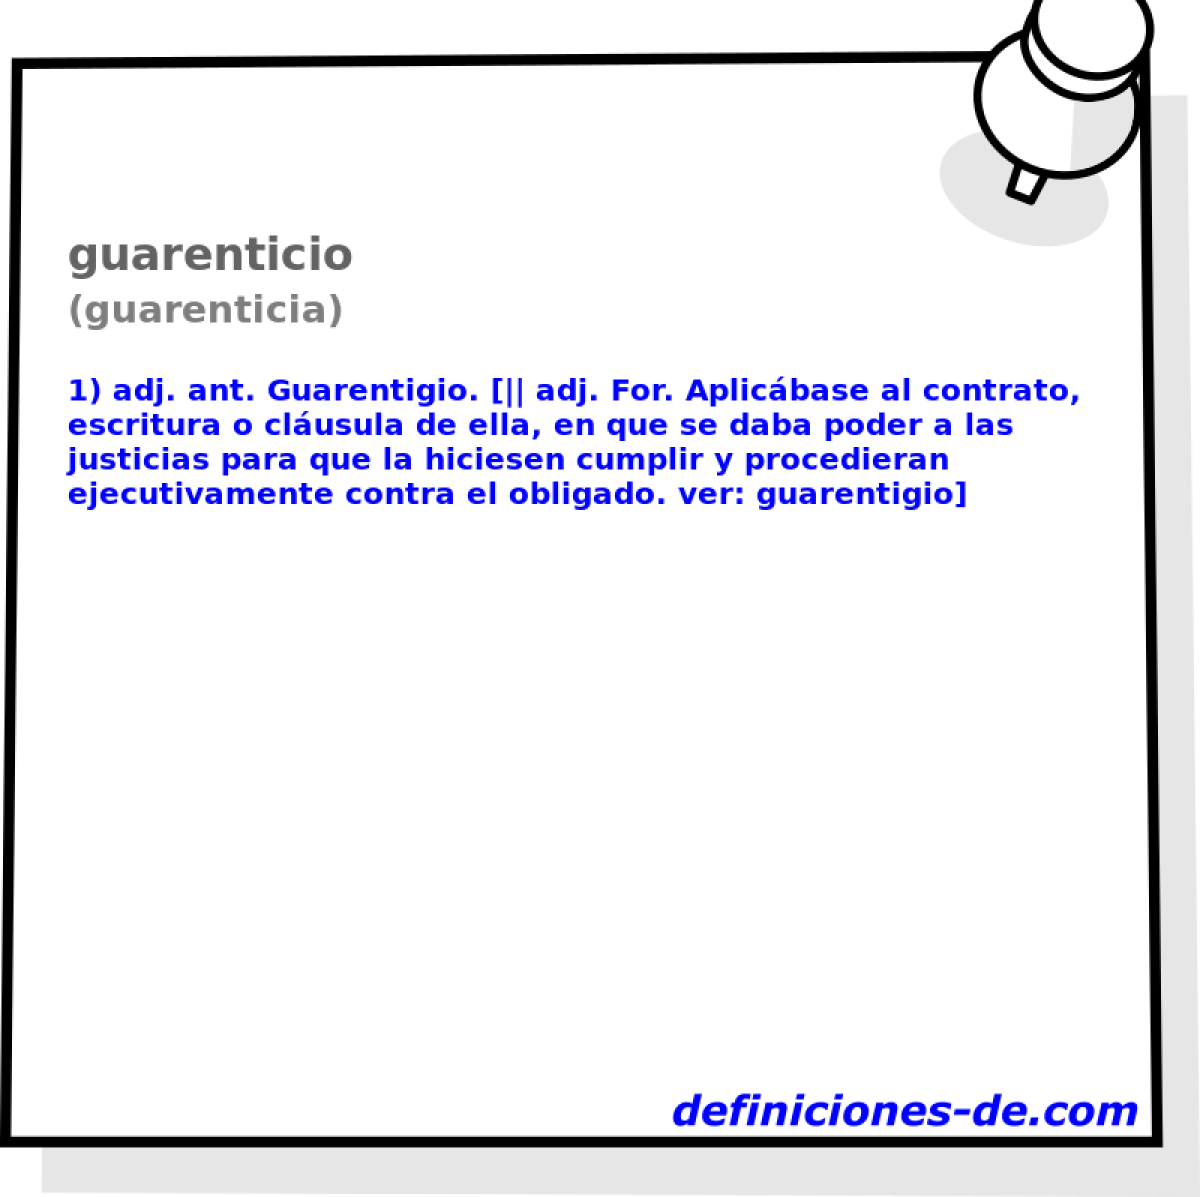 guarenticio (guarenticia)